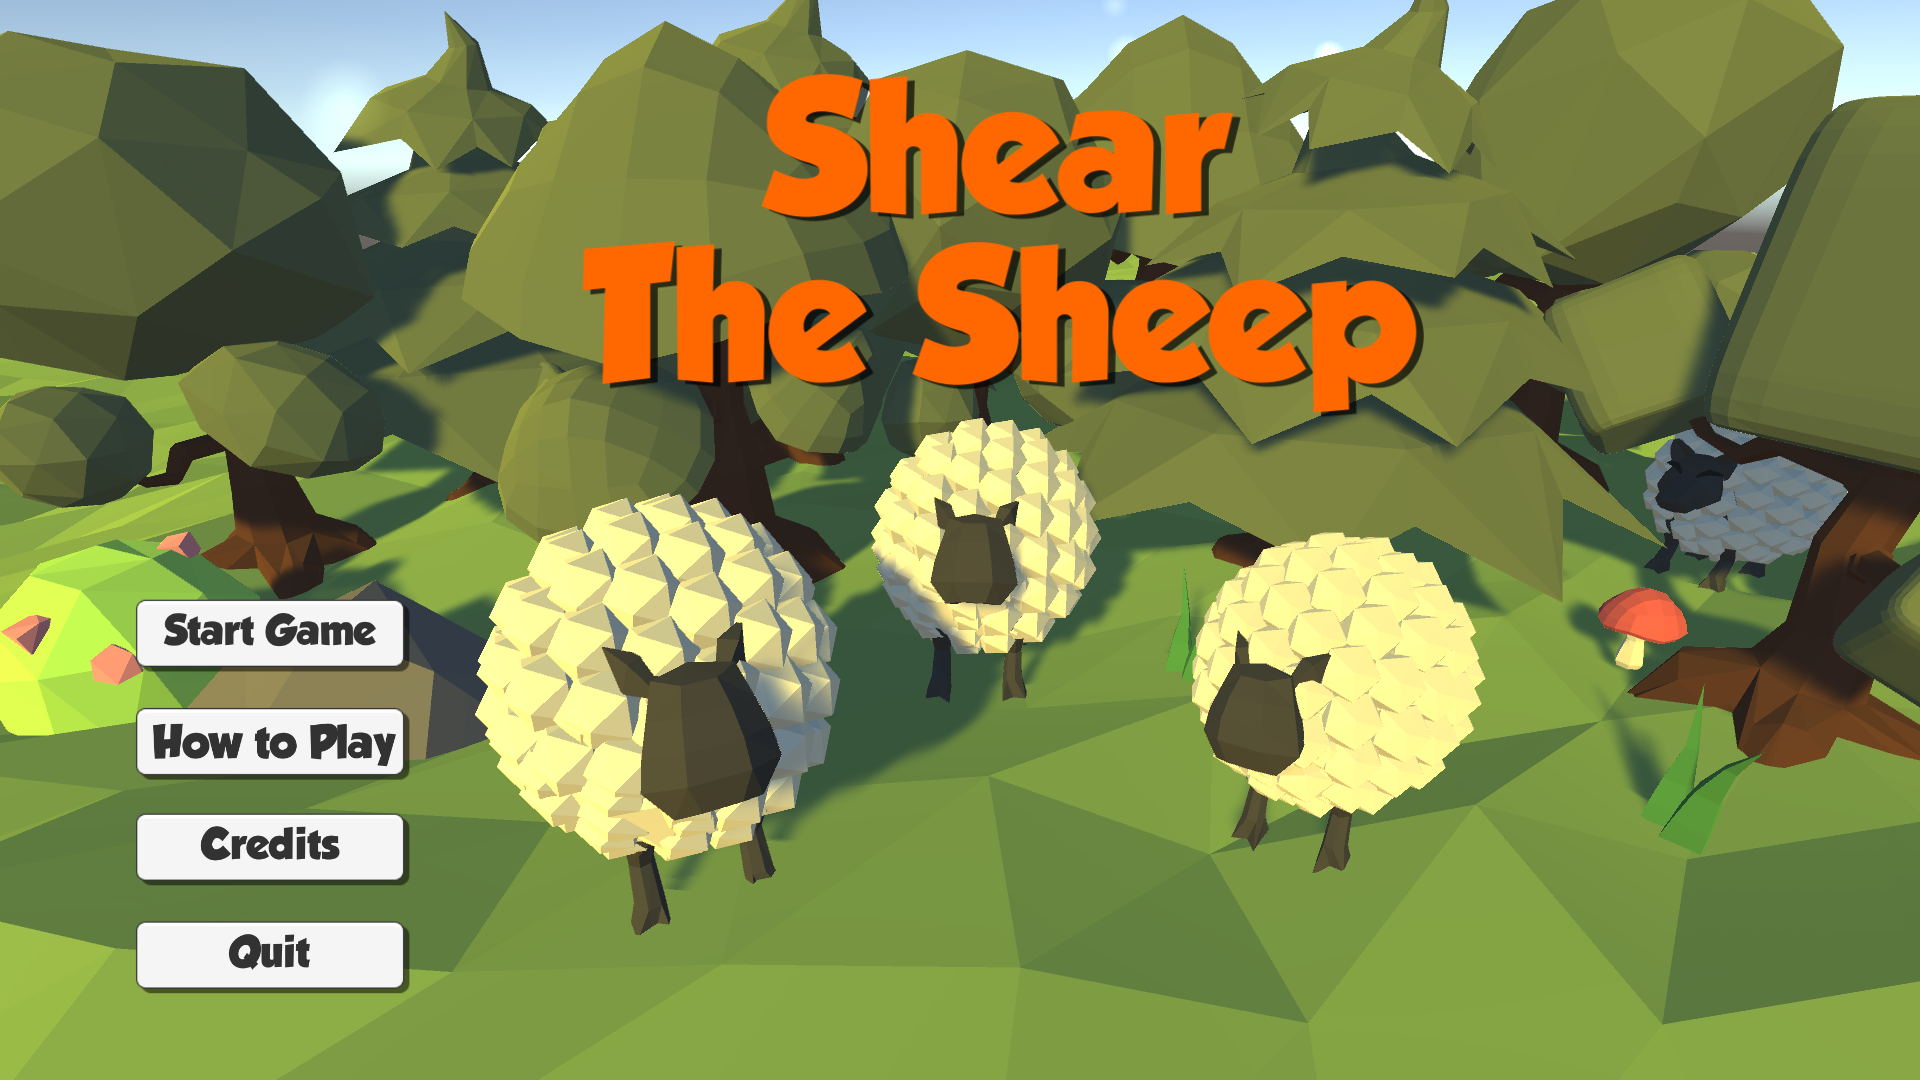 Shear the Sheep